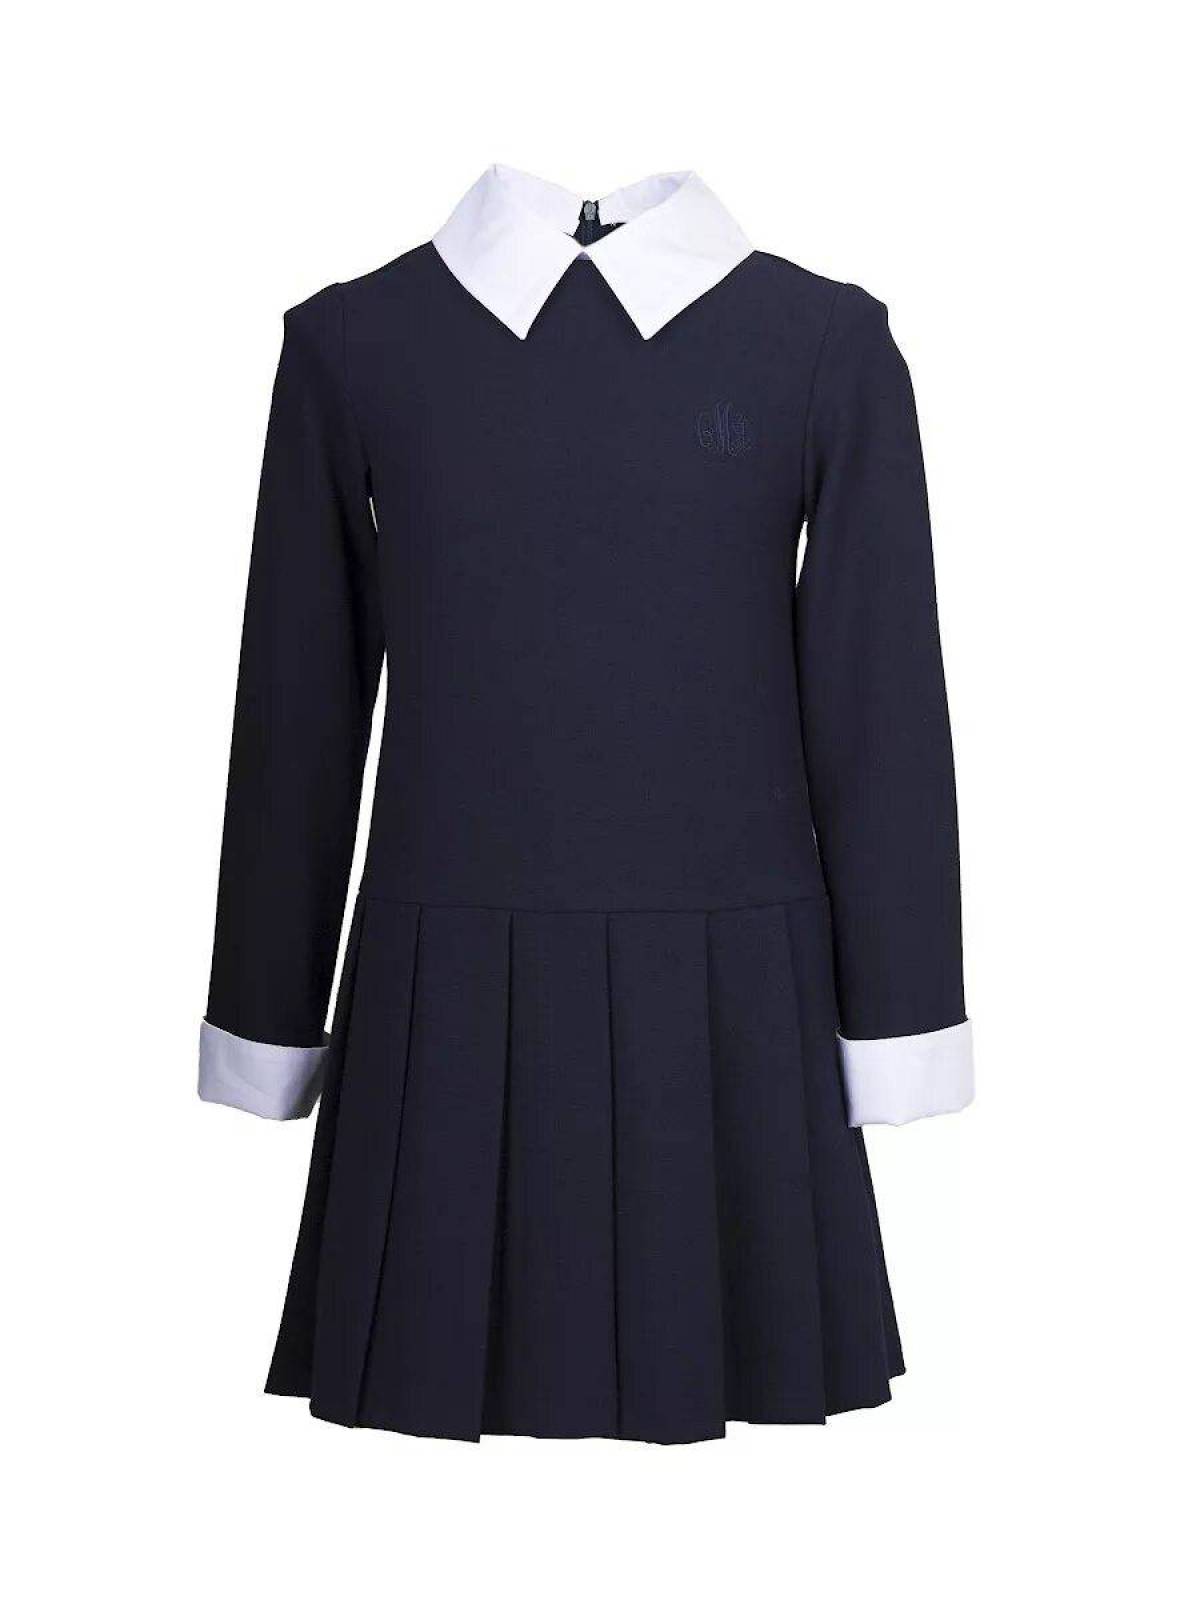 Школа форма купит. Платье школьное. Школьная форма для девокс. Детская Школьная форма. Школьное платье для девочки.